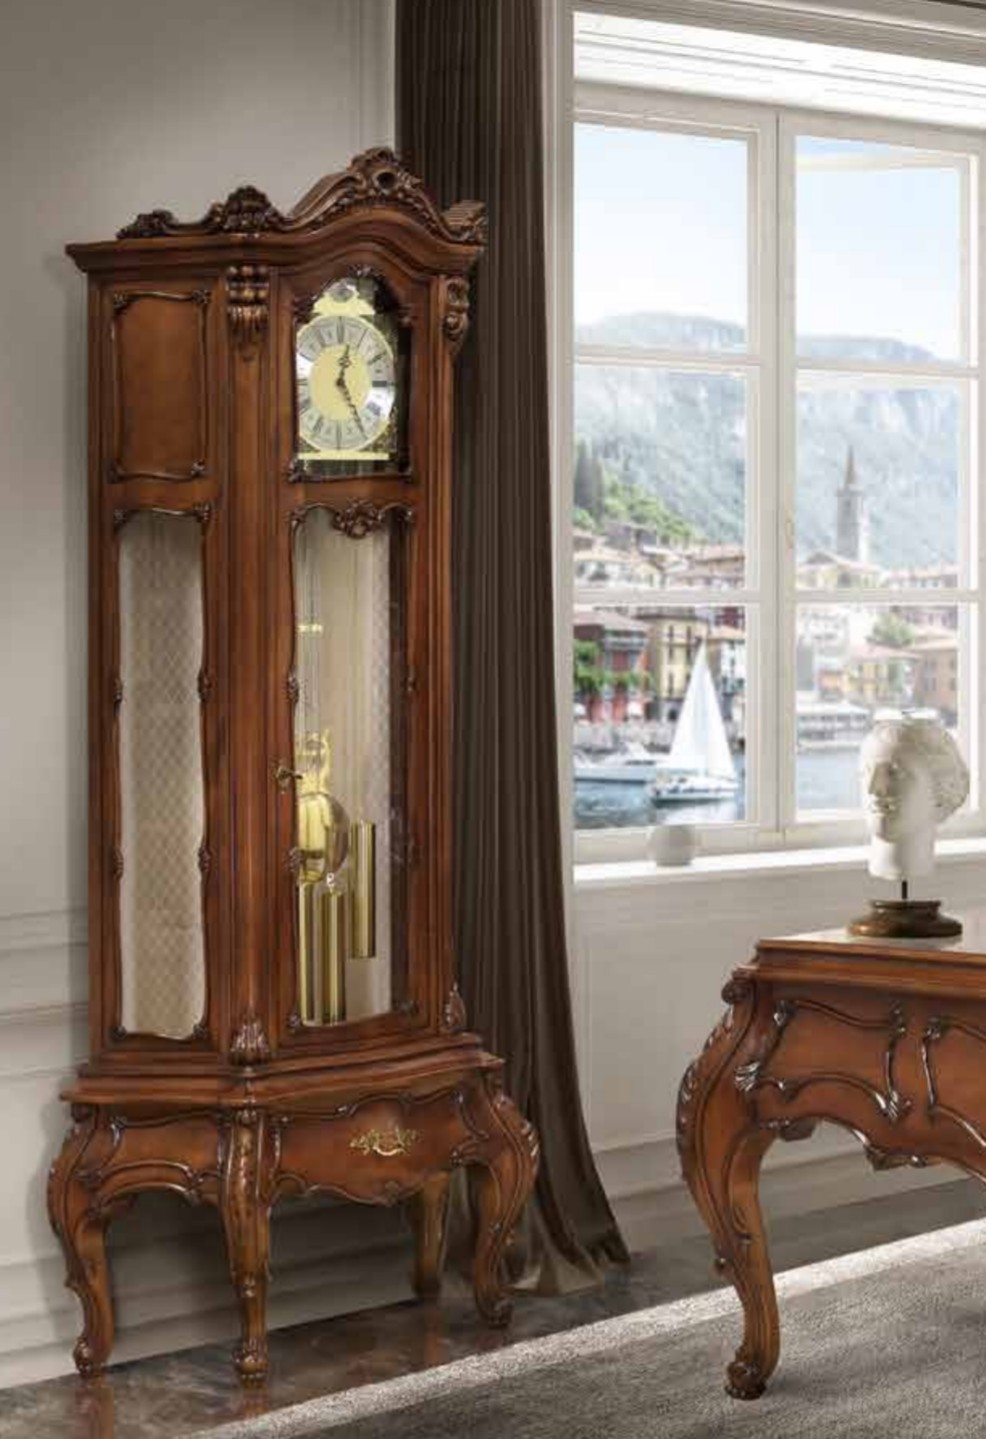 Румынские напольные часы Клеопатра Люкс орех